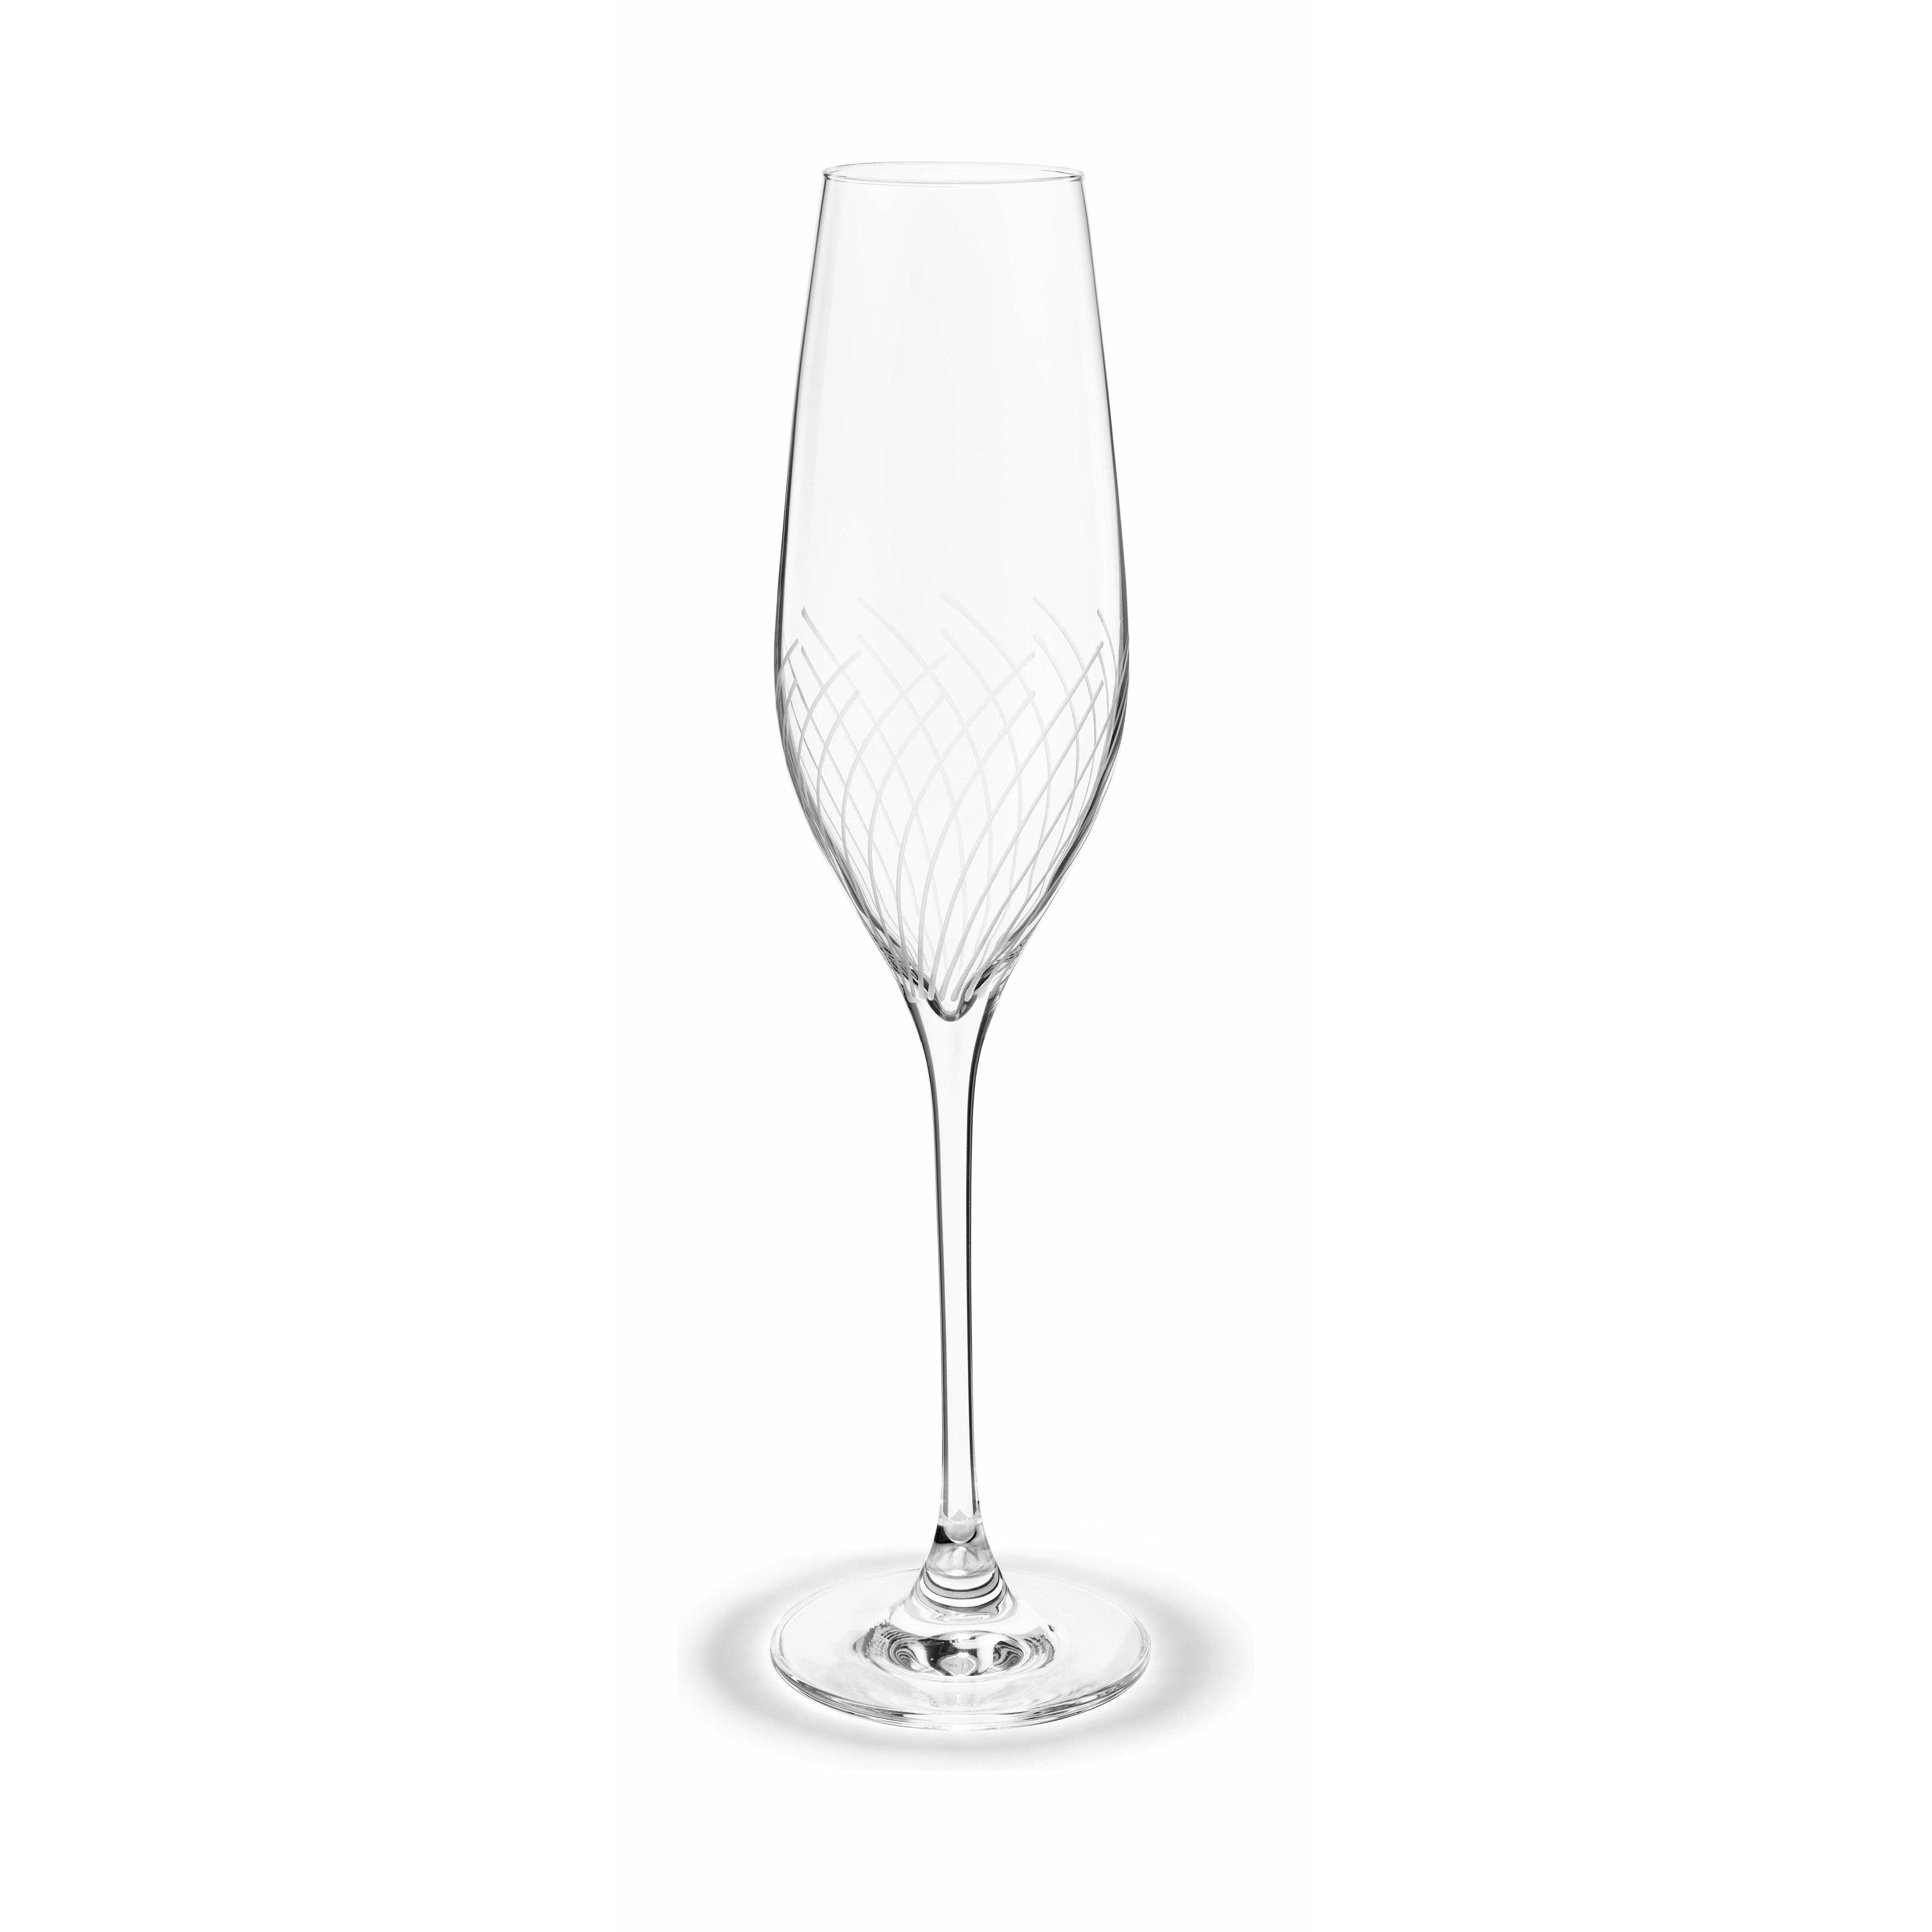 Holmegaard Cabernet linjer Champagne Glass, 2 stk.